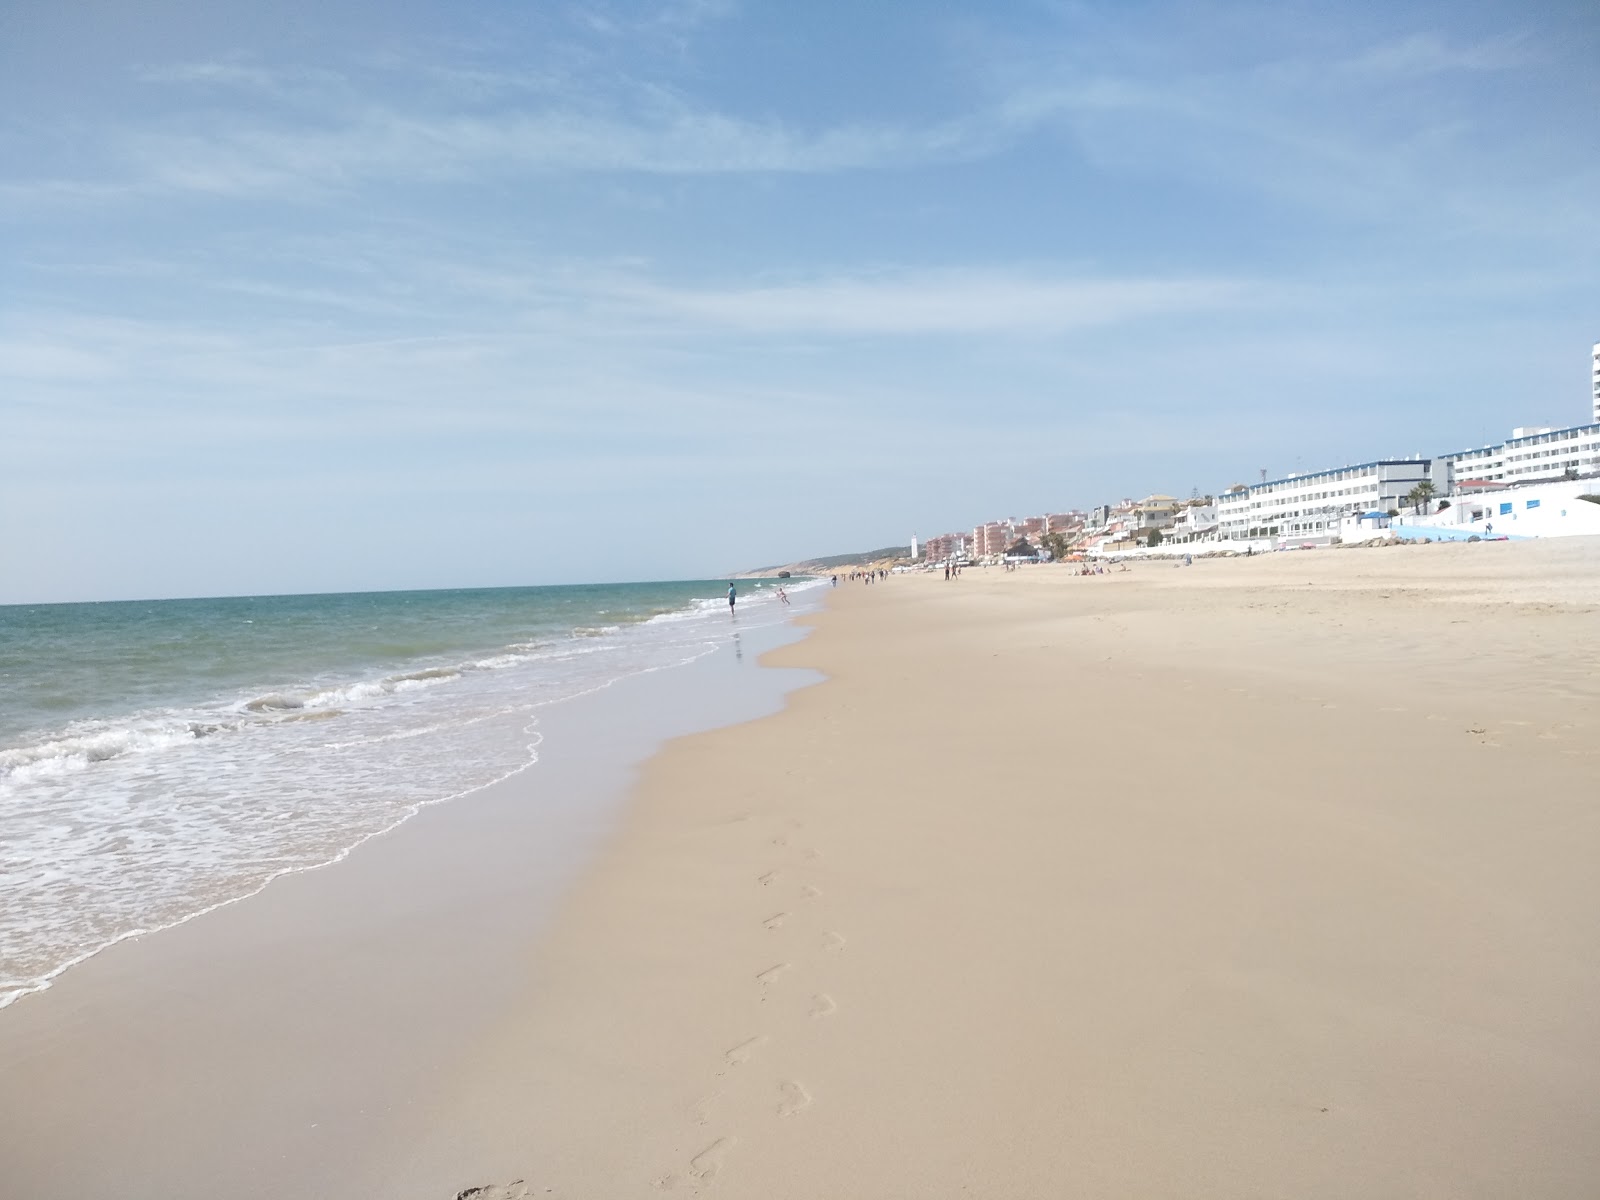 Playa de Matalascanas'in fotoğrafı çok temiz temizlik seviyesi ile